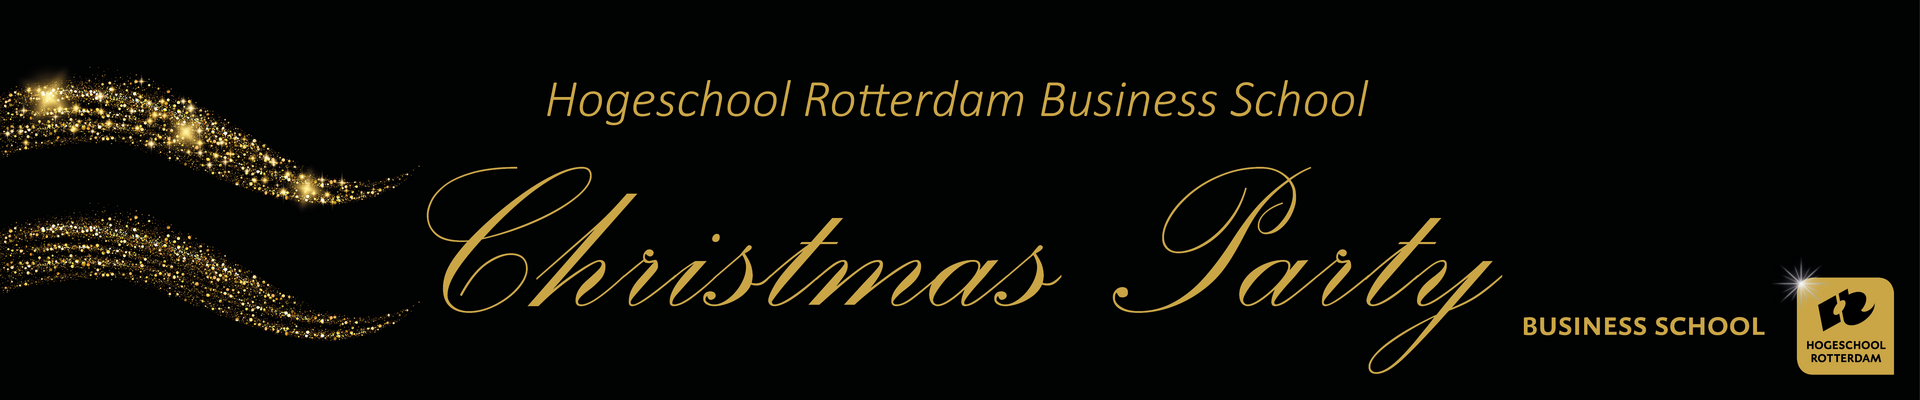 HR Business School Christmas Party 20 dec 2018